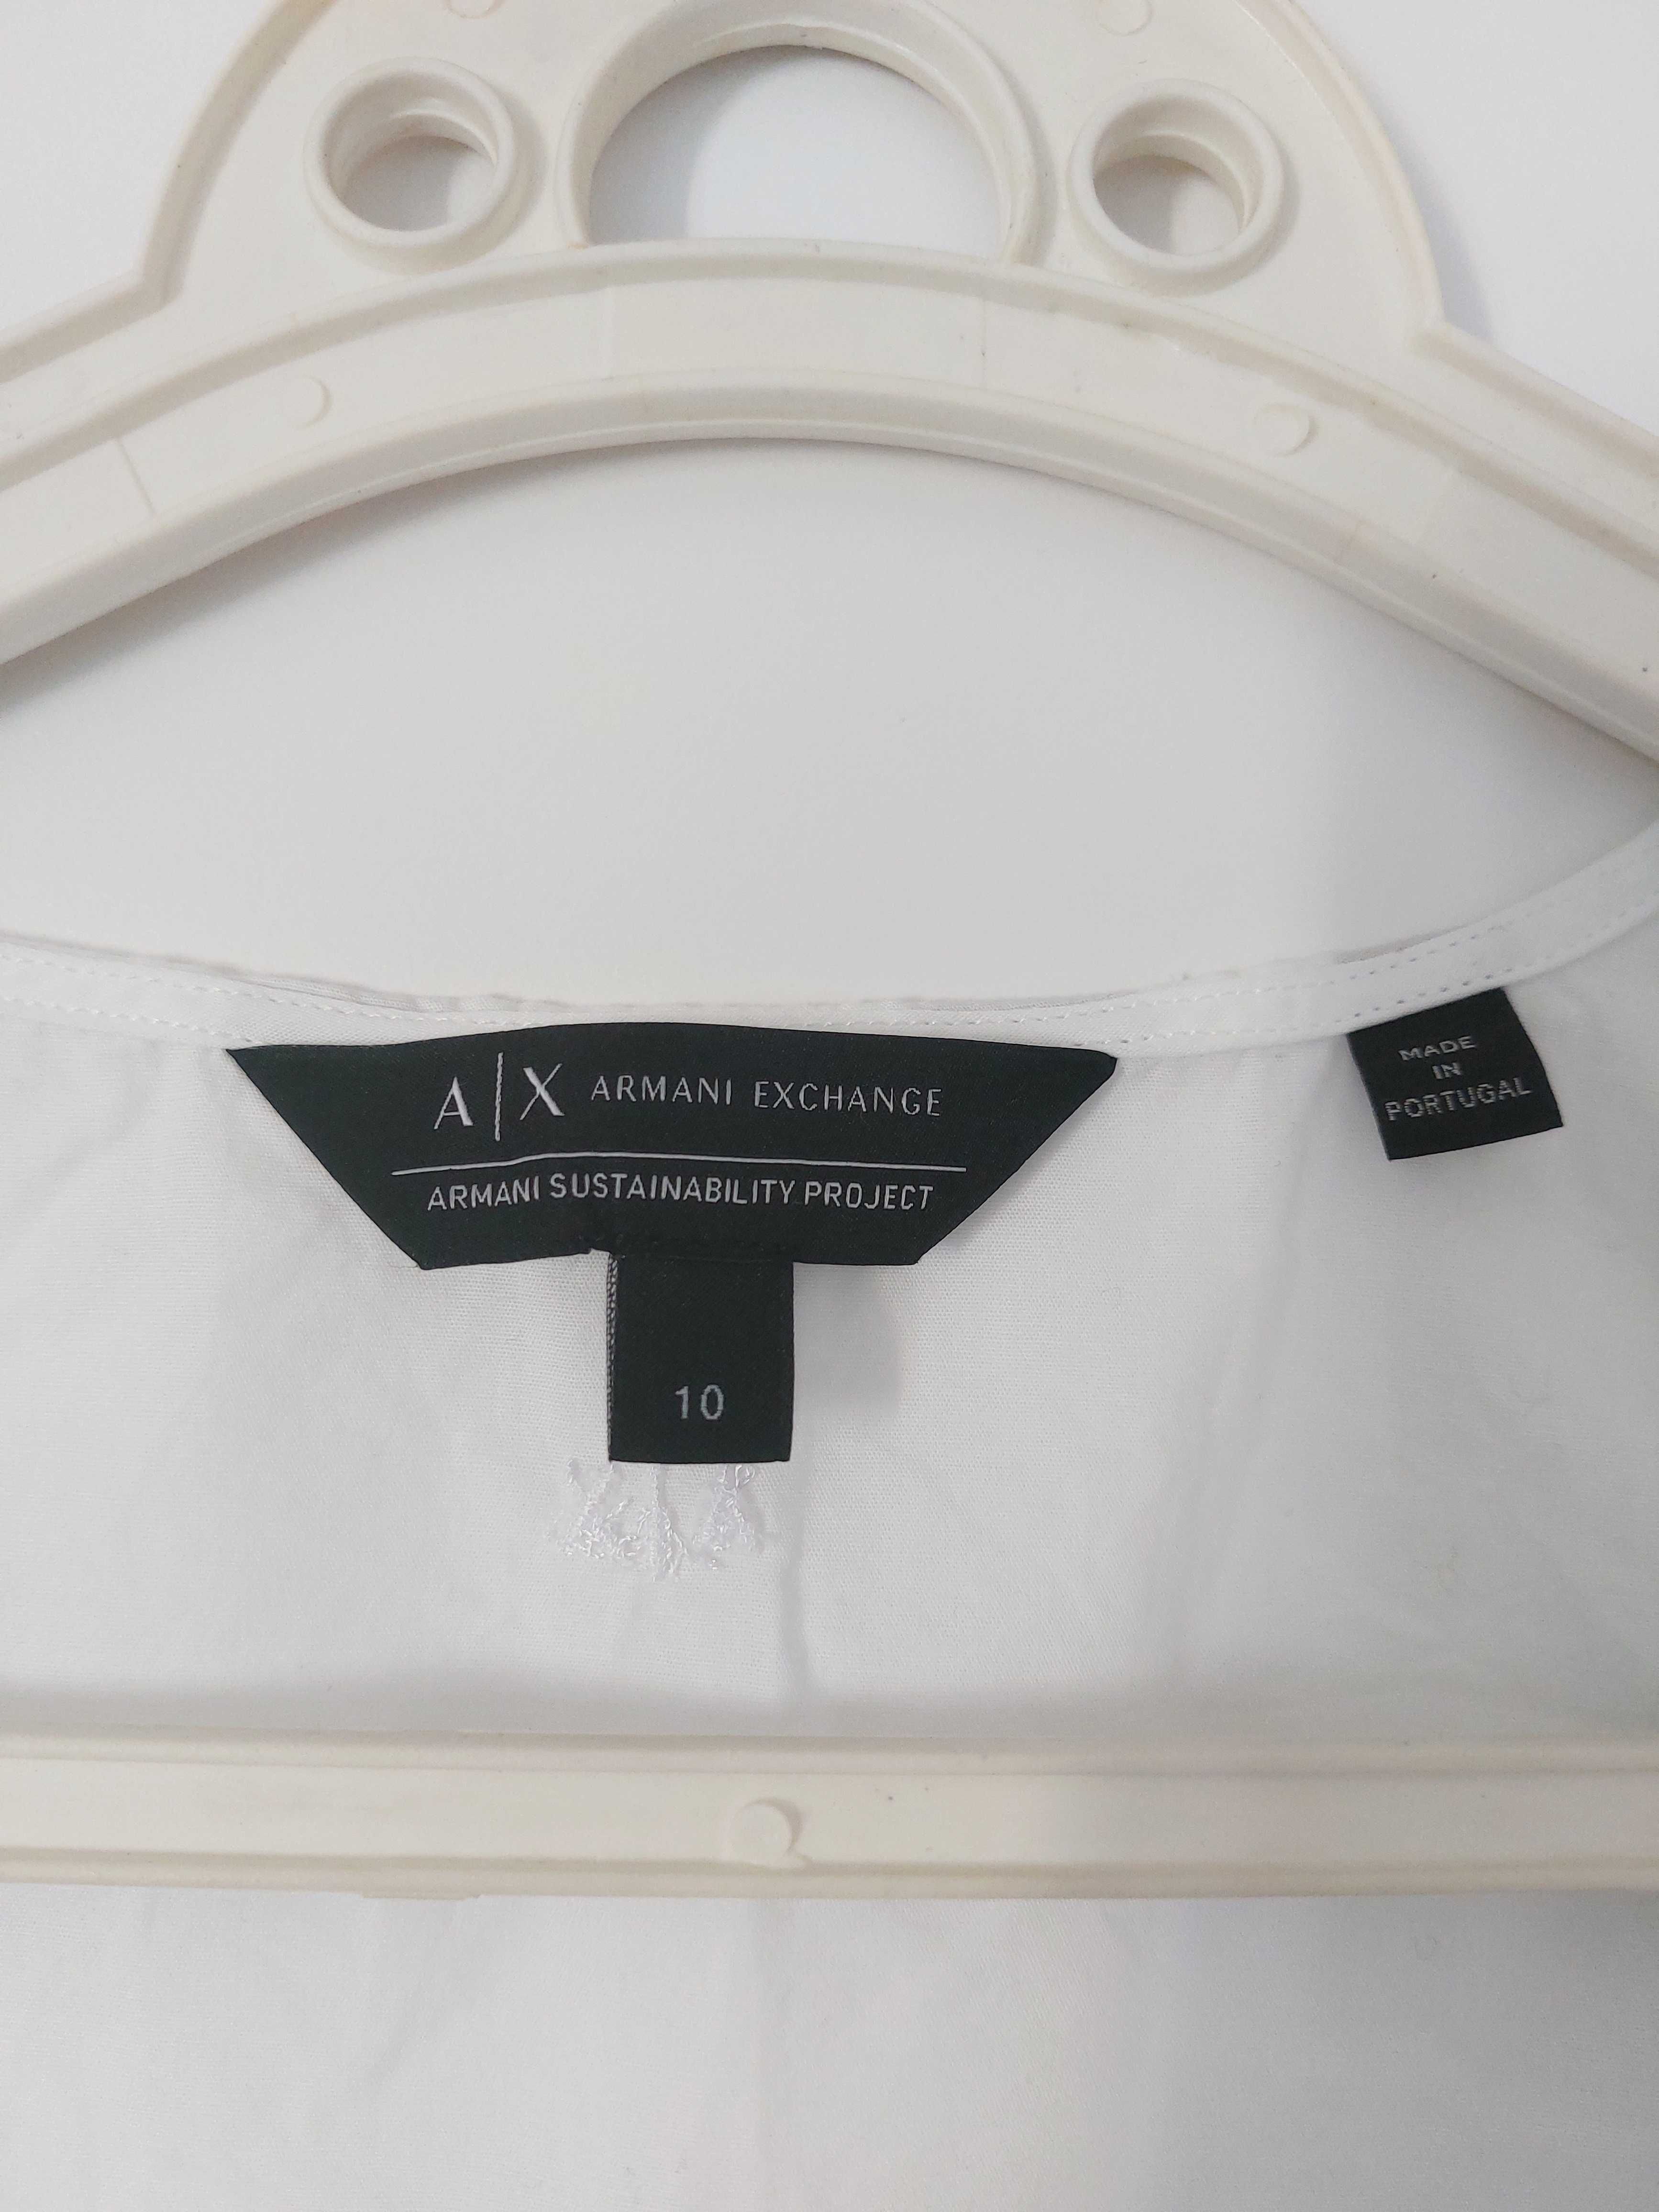 sukienka letnia Armani Exchange, M, biała, bez rękawów